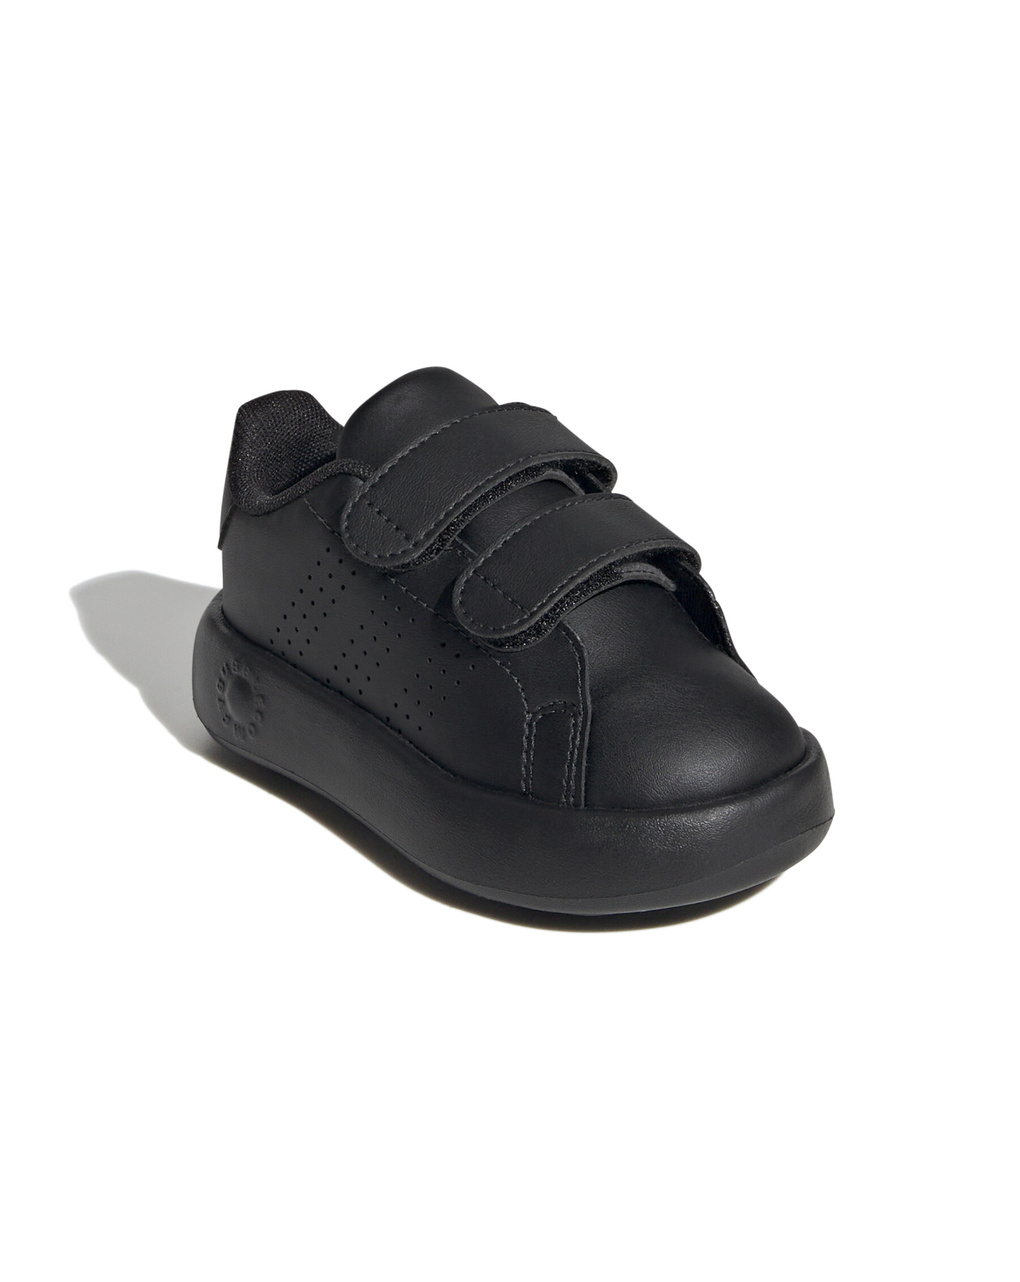 Zapatillas adidas advantage infant - Adidas